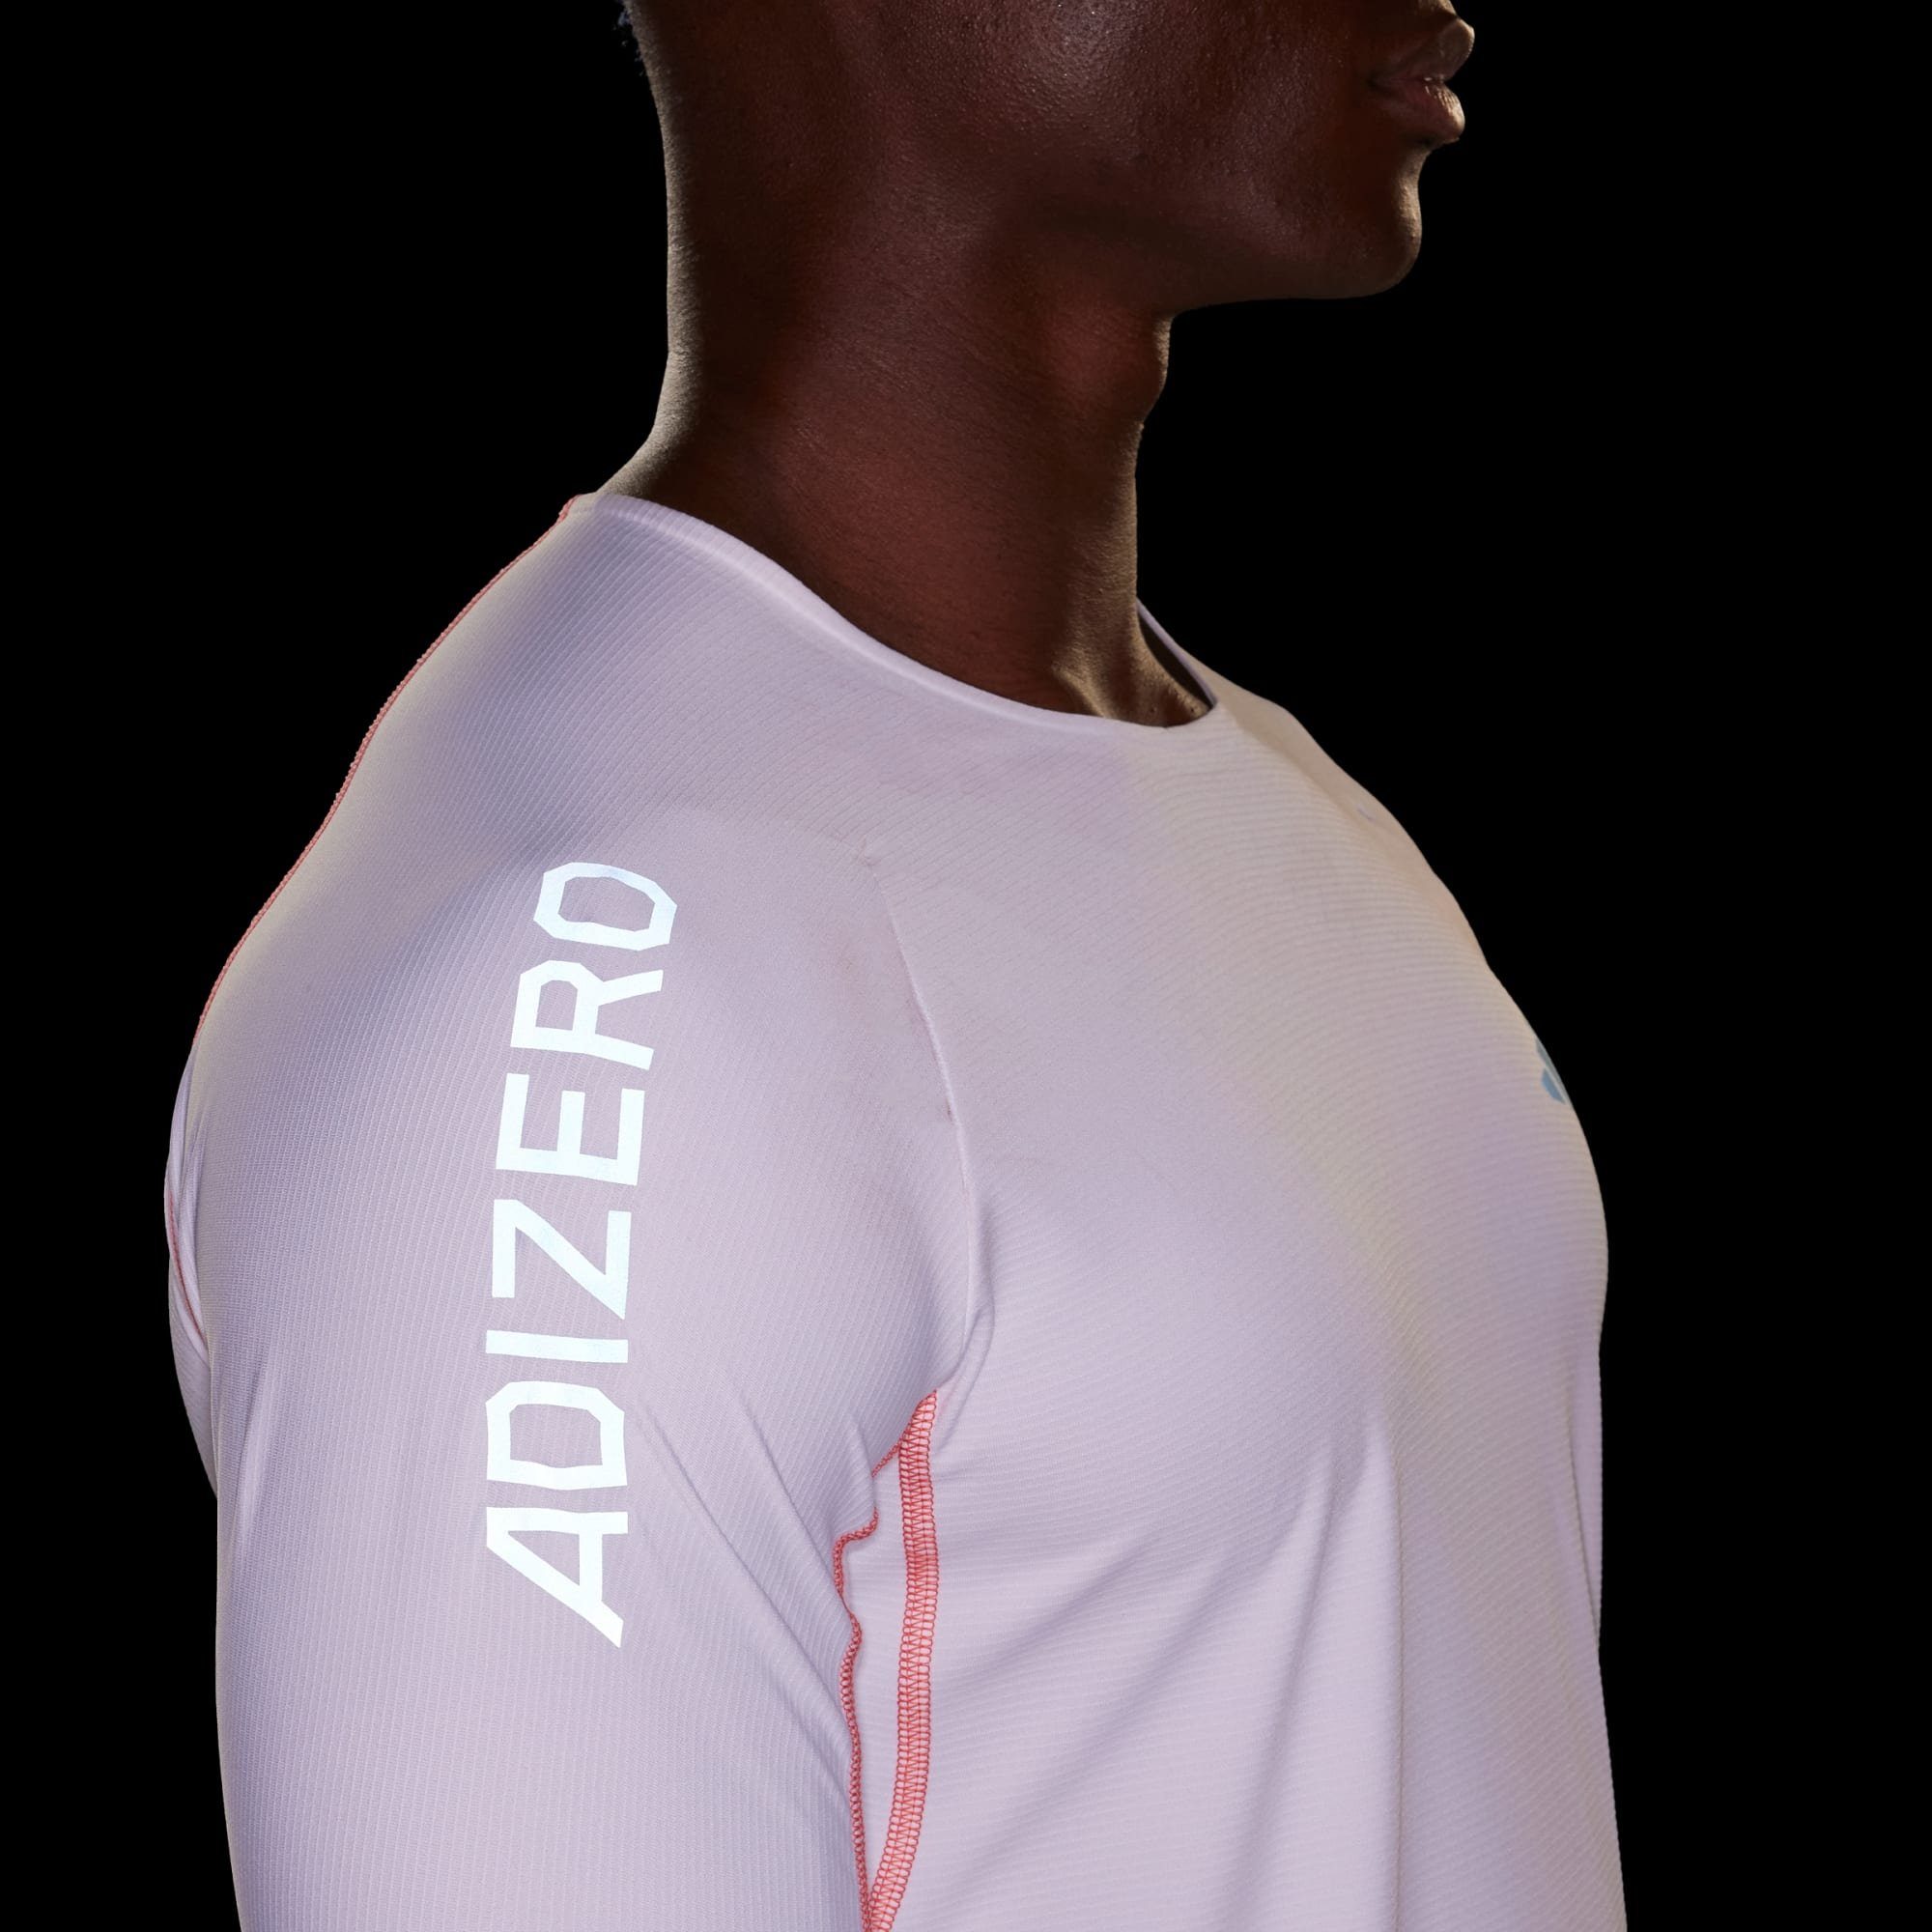 RUNNING LONGSLEEVE White Performance Laufshirt ADIZERO adidas